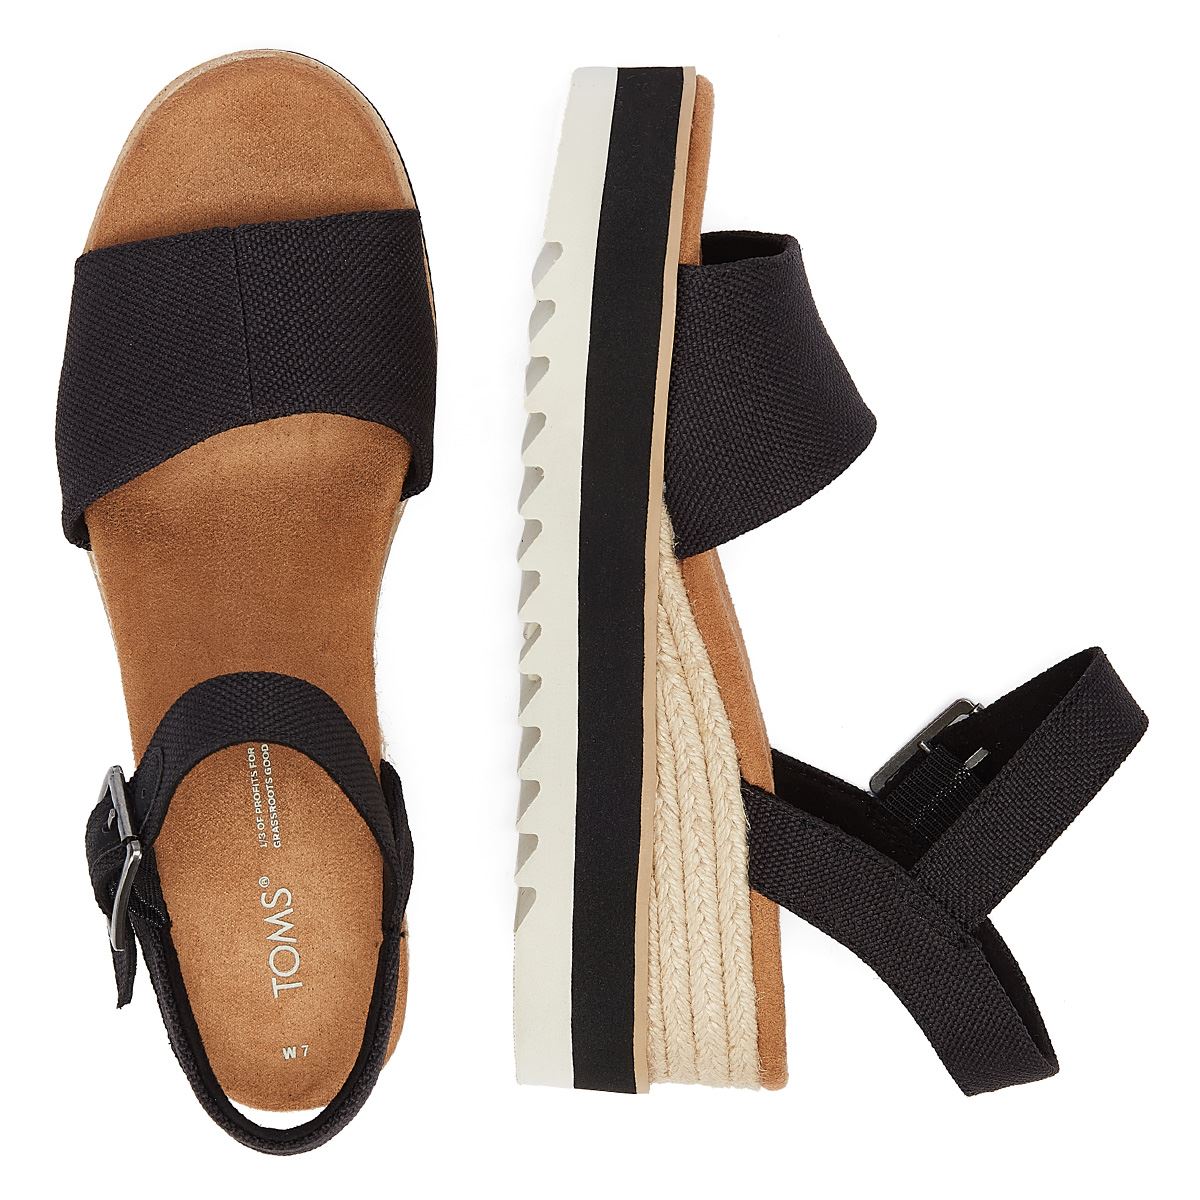 TOMS: Diana Wedge Sandals Black Canvas – The Vogue Boutique